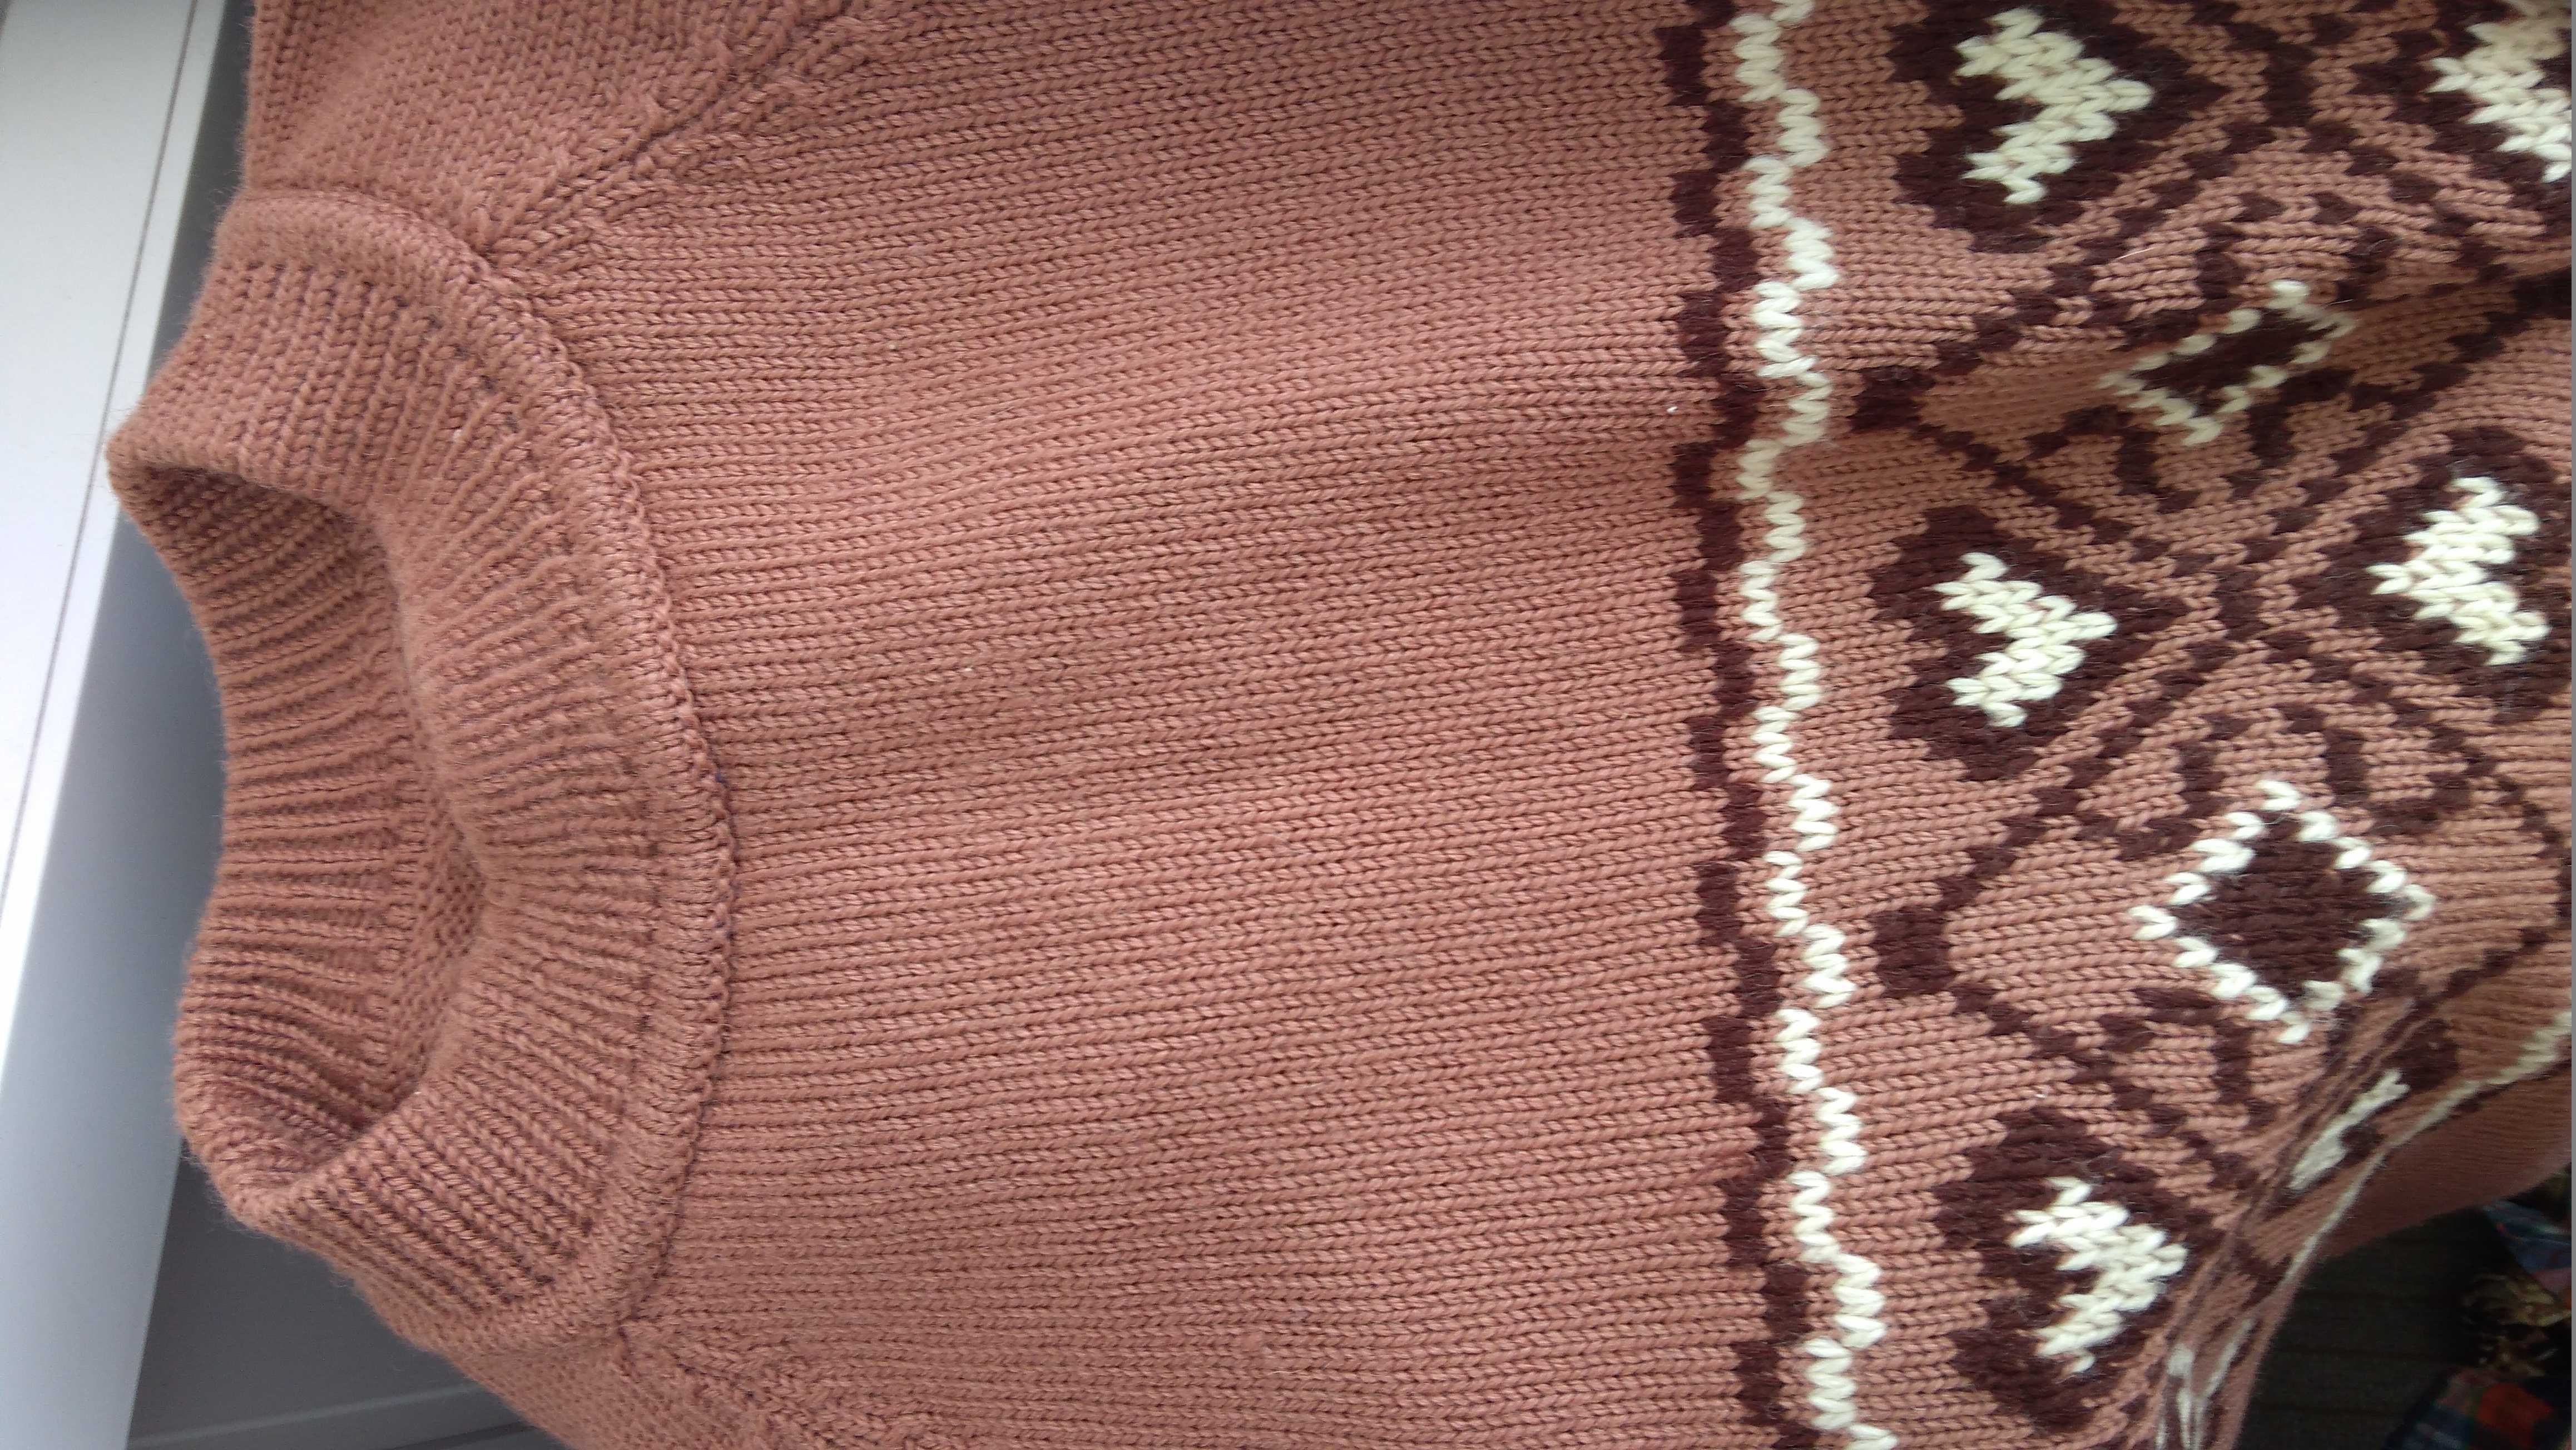 Джемпер свитер НОВЫЙ светло-коричневый цвет ШЕРСТЬ 52р.Крупная вязка.